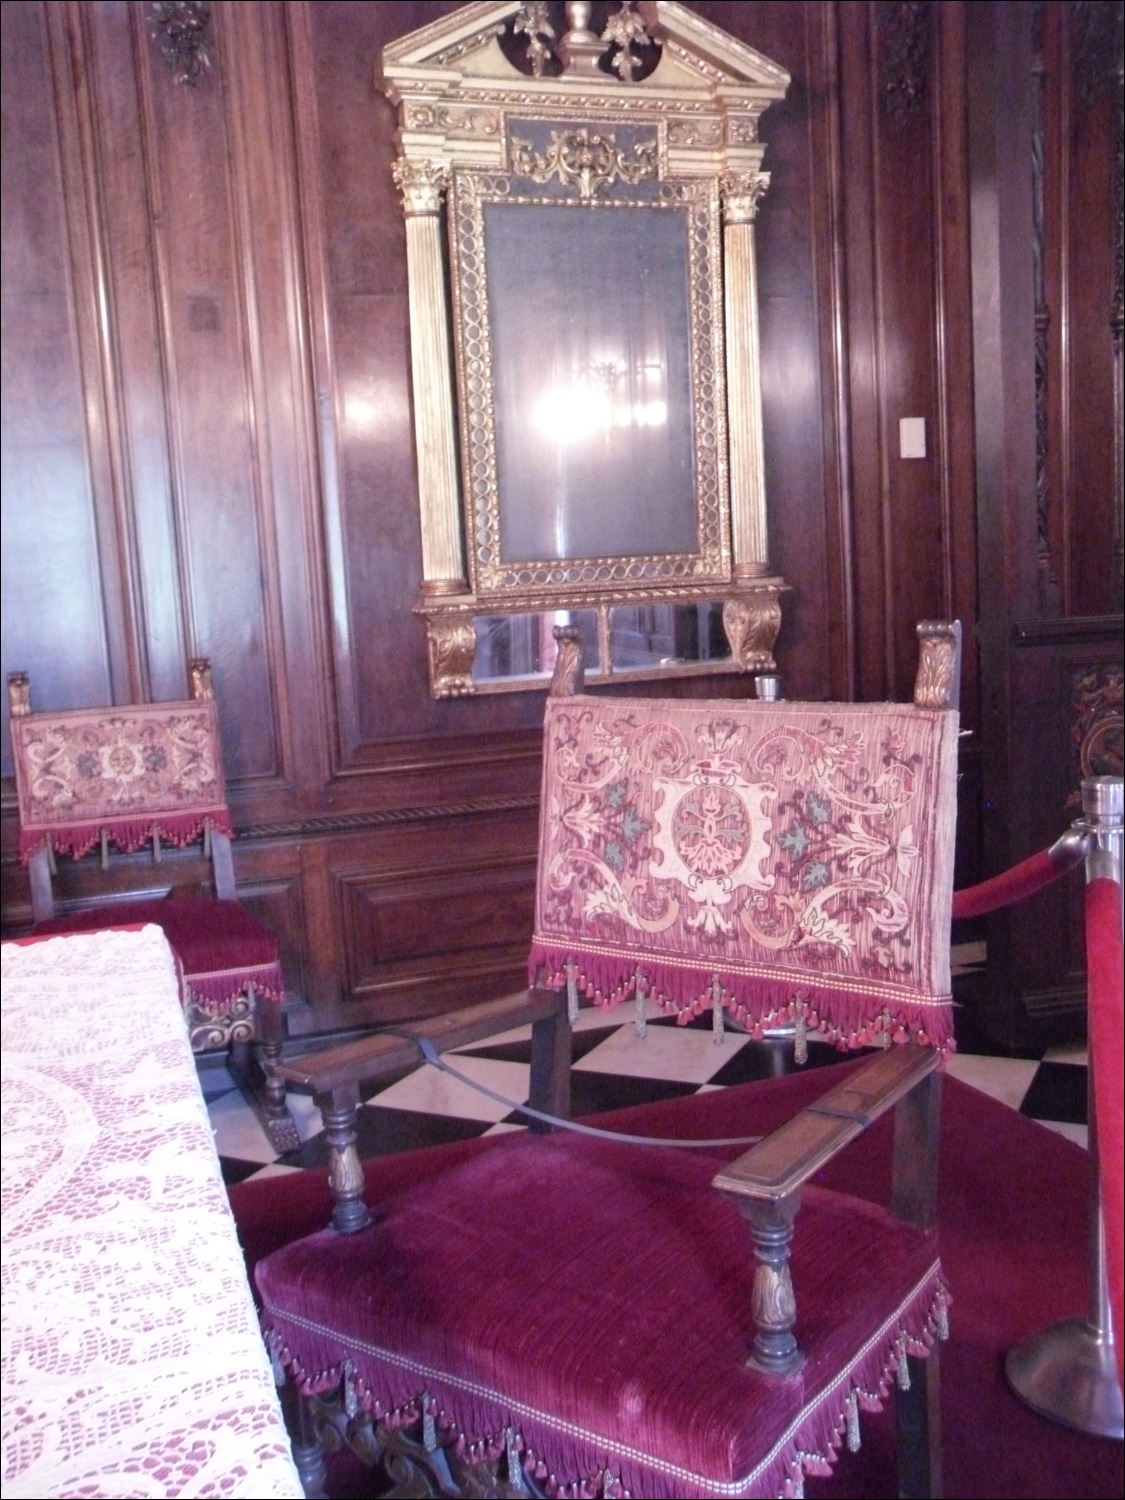 John & Mabel Ringling Museum-Ca' d'Zan mansion-formal dining room